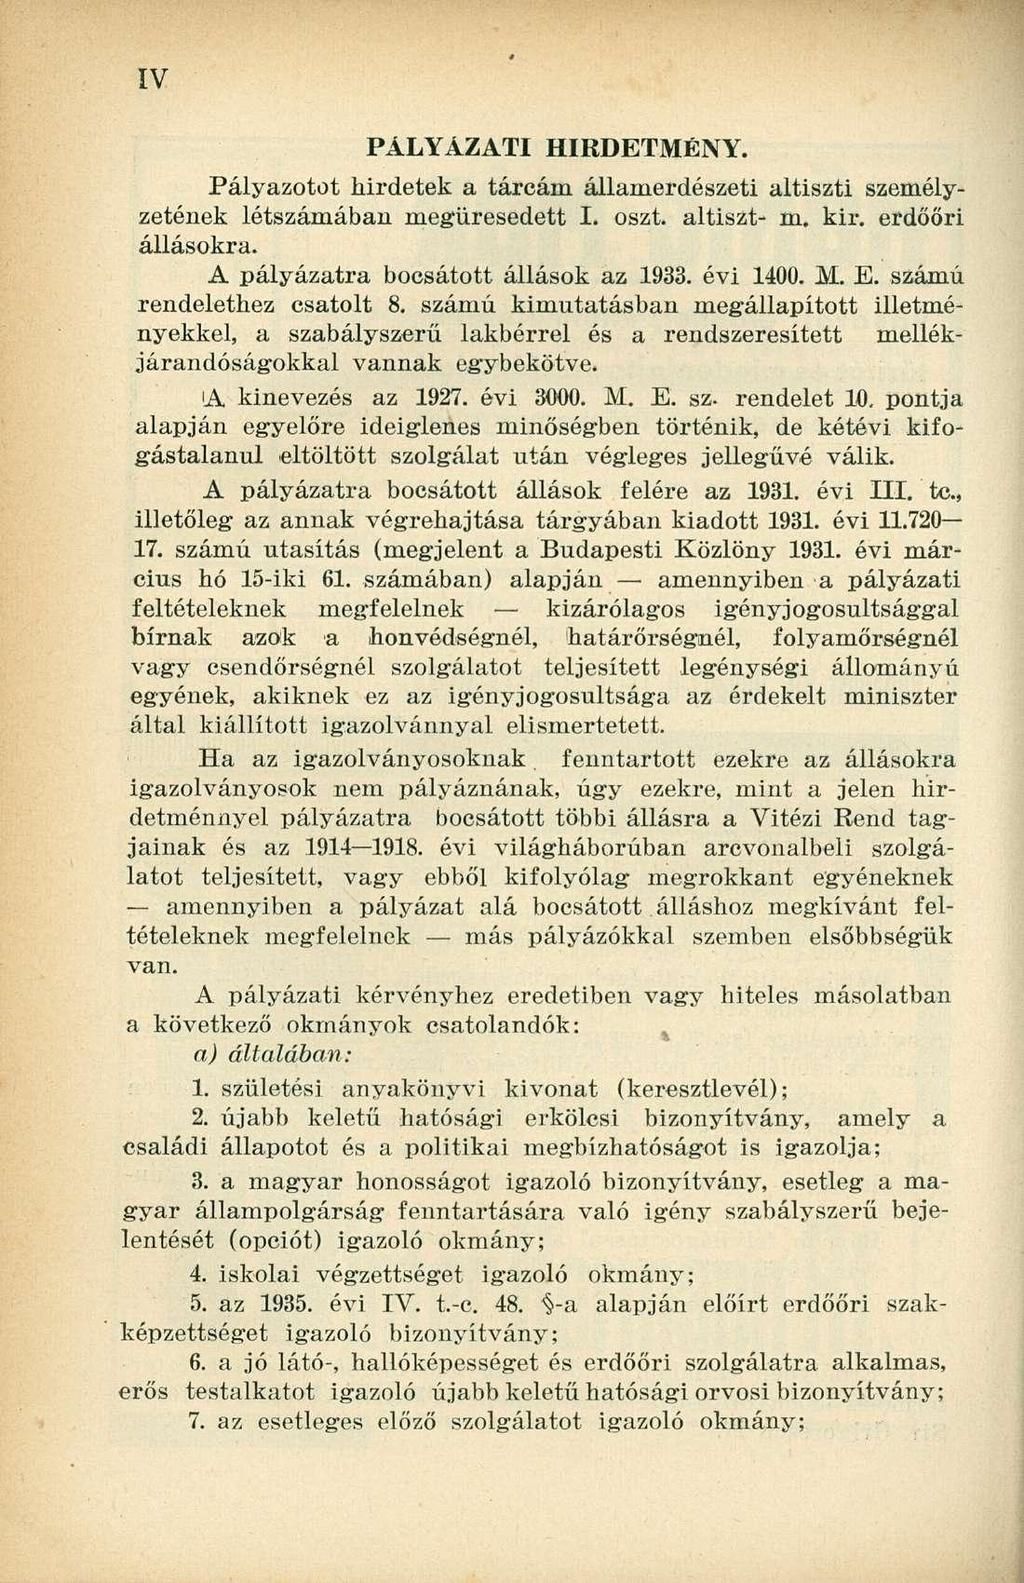 PÁLYÁZATI HIRDETMÉNY. Pályazotot hirdetek a tárcám államerdészeti altiszti személyzetének létszámában megüresedett I. oszt. altiszt- m. kir. erdőőri állásokra. A pályázatra bocsátott állások az 1933.